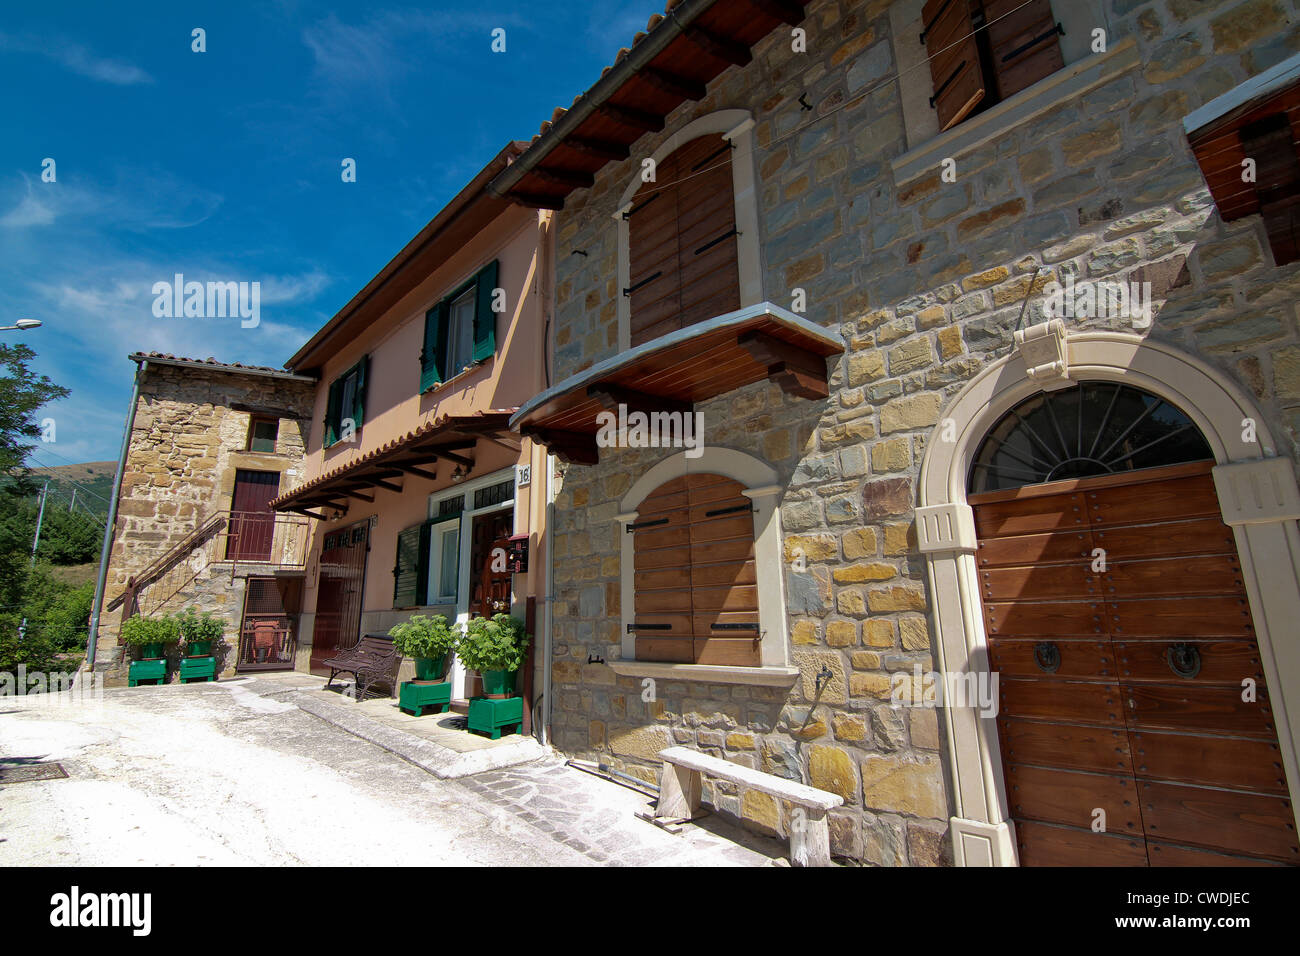 Rue de la 12e siècle, village de montagne de Cassino en Italie Banque D'Images